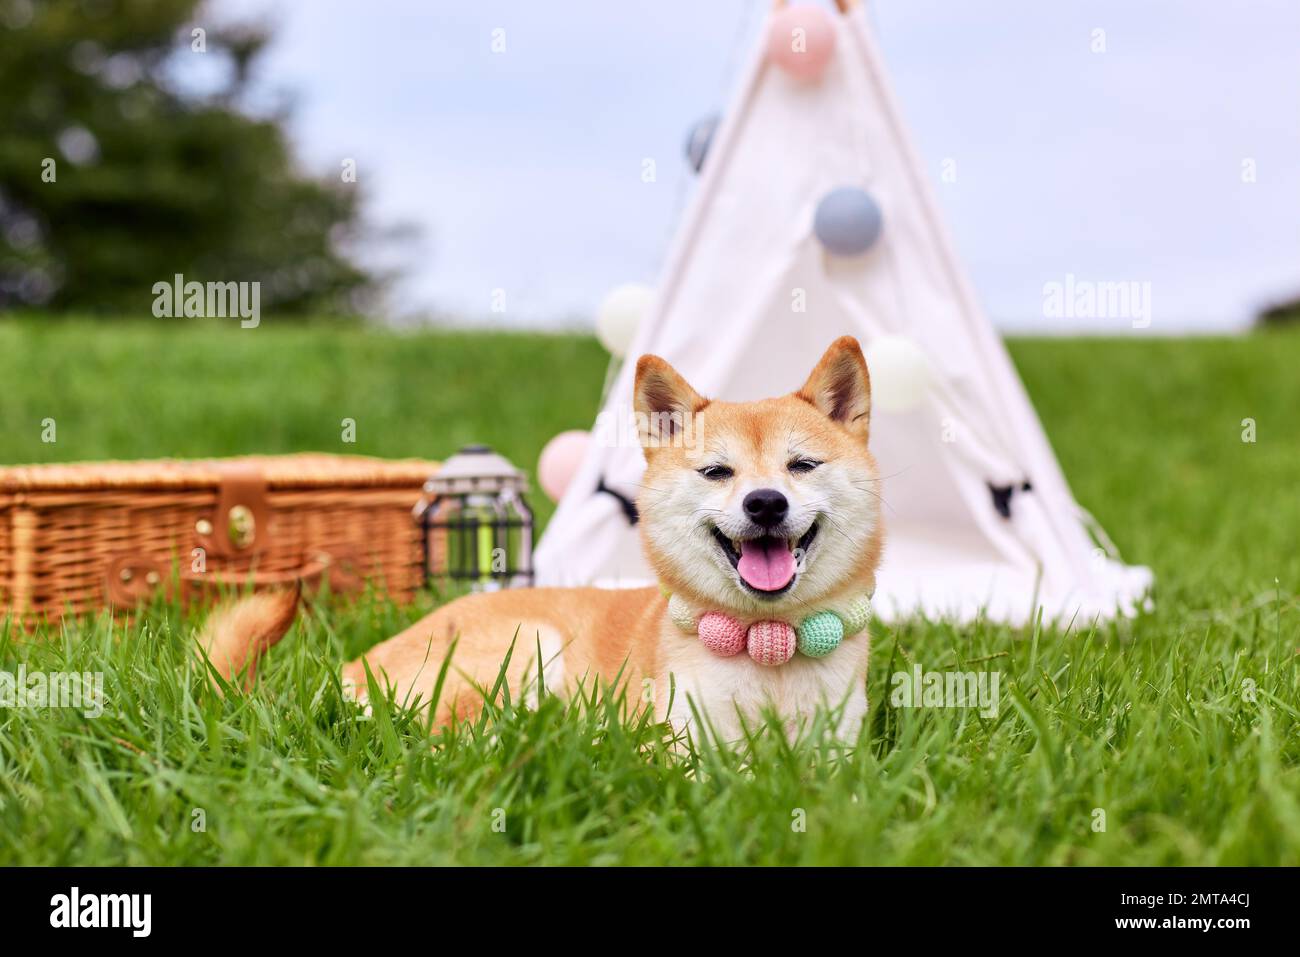 Shiba inu dog on green grass Stock Photo